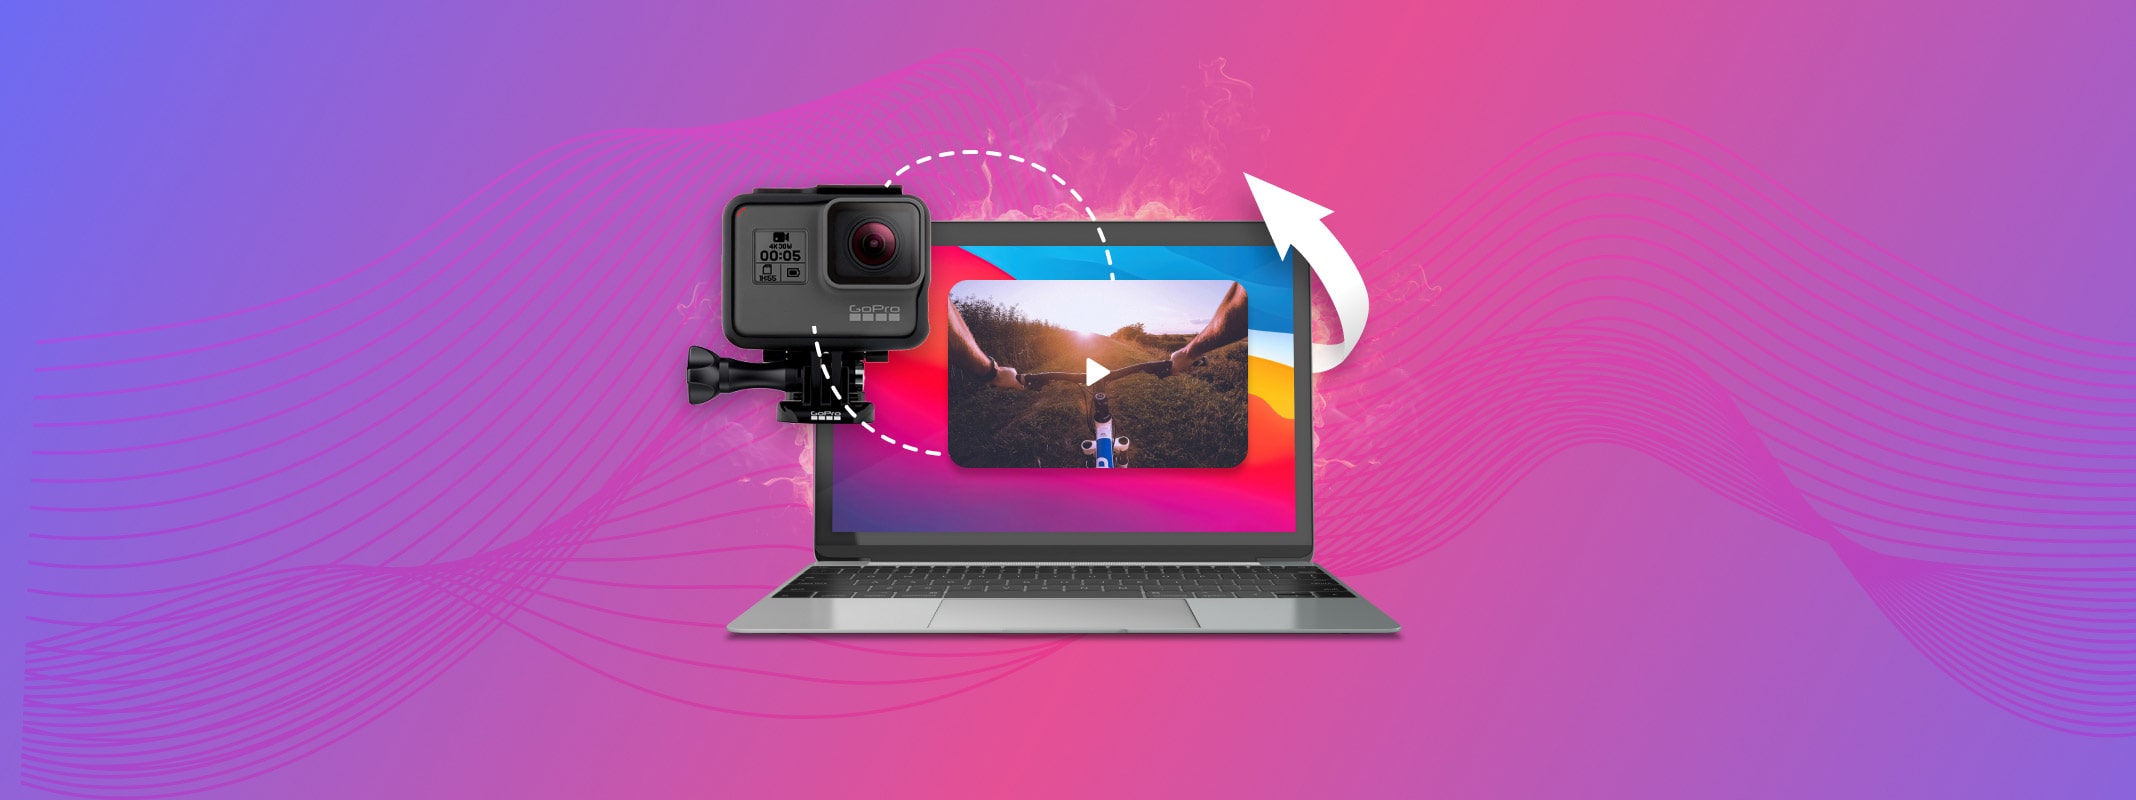 Geniet Afkorten kop How to Download GoPro Video to Mac: 4 Methods of Transferring